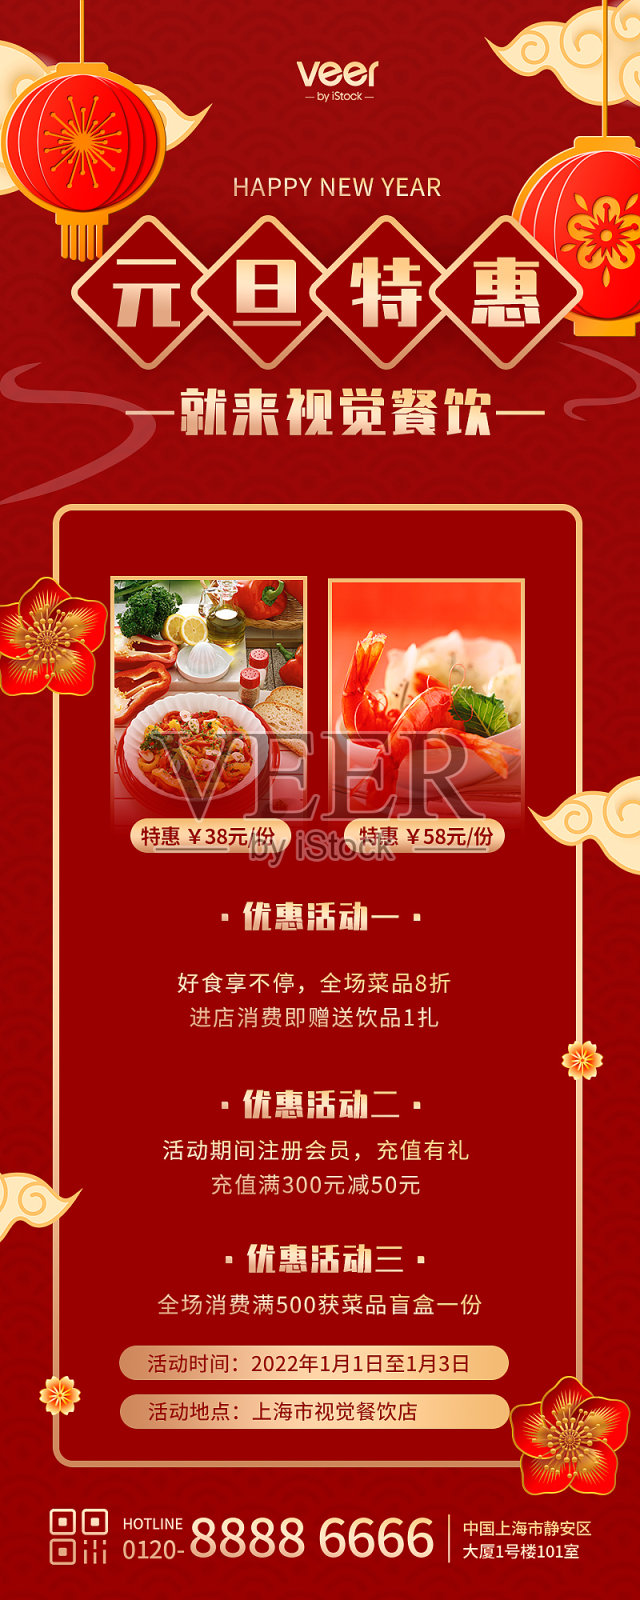 红色扁平中国风元旦餐饮促销营销长图设计模板素材